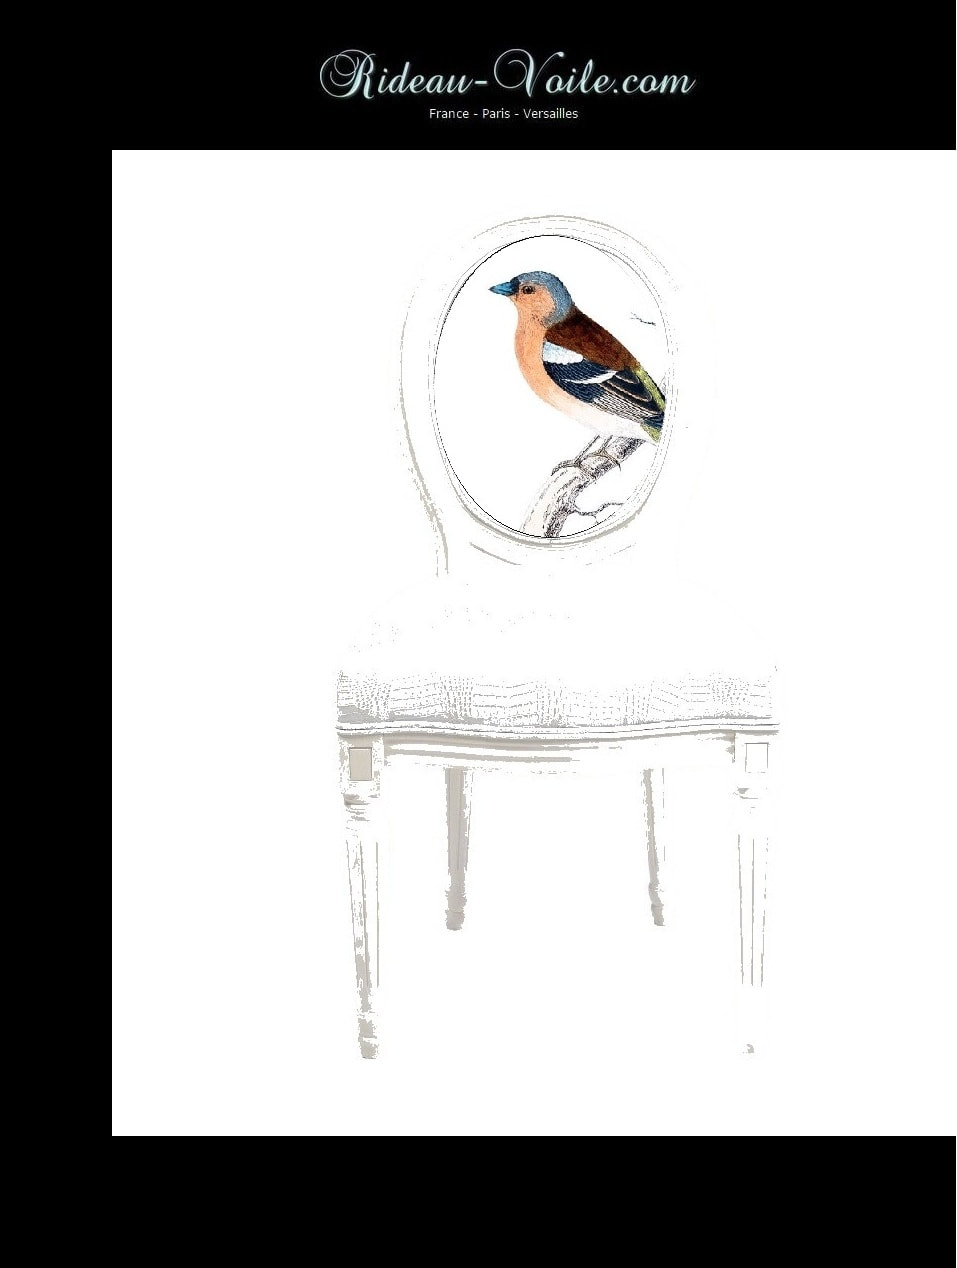 siège cabriolet de style louis 16 xvi XVI Empire décoration fauteuil chaise tissu tapisserie motif oiseaux tapissier médaillon bois hêtre ameublement lin coton dossier assise Paris Versailles France